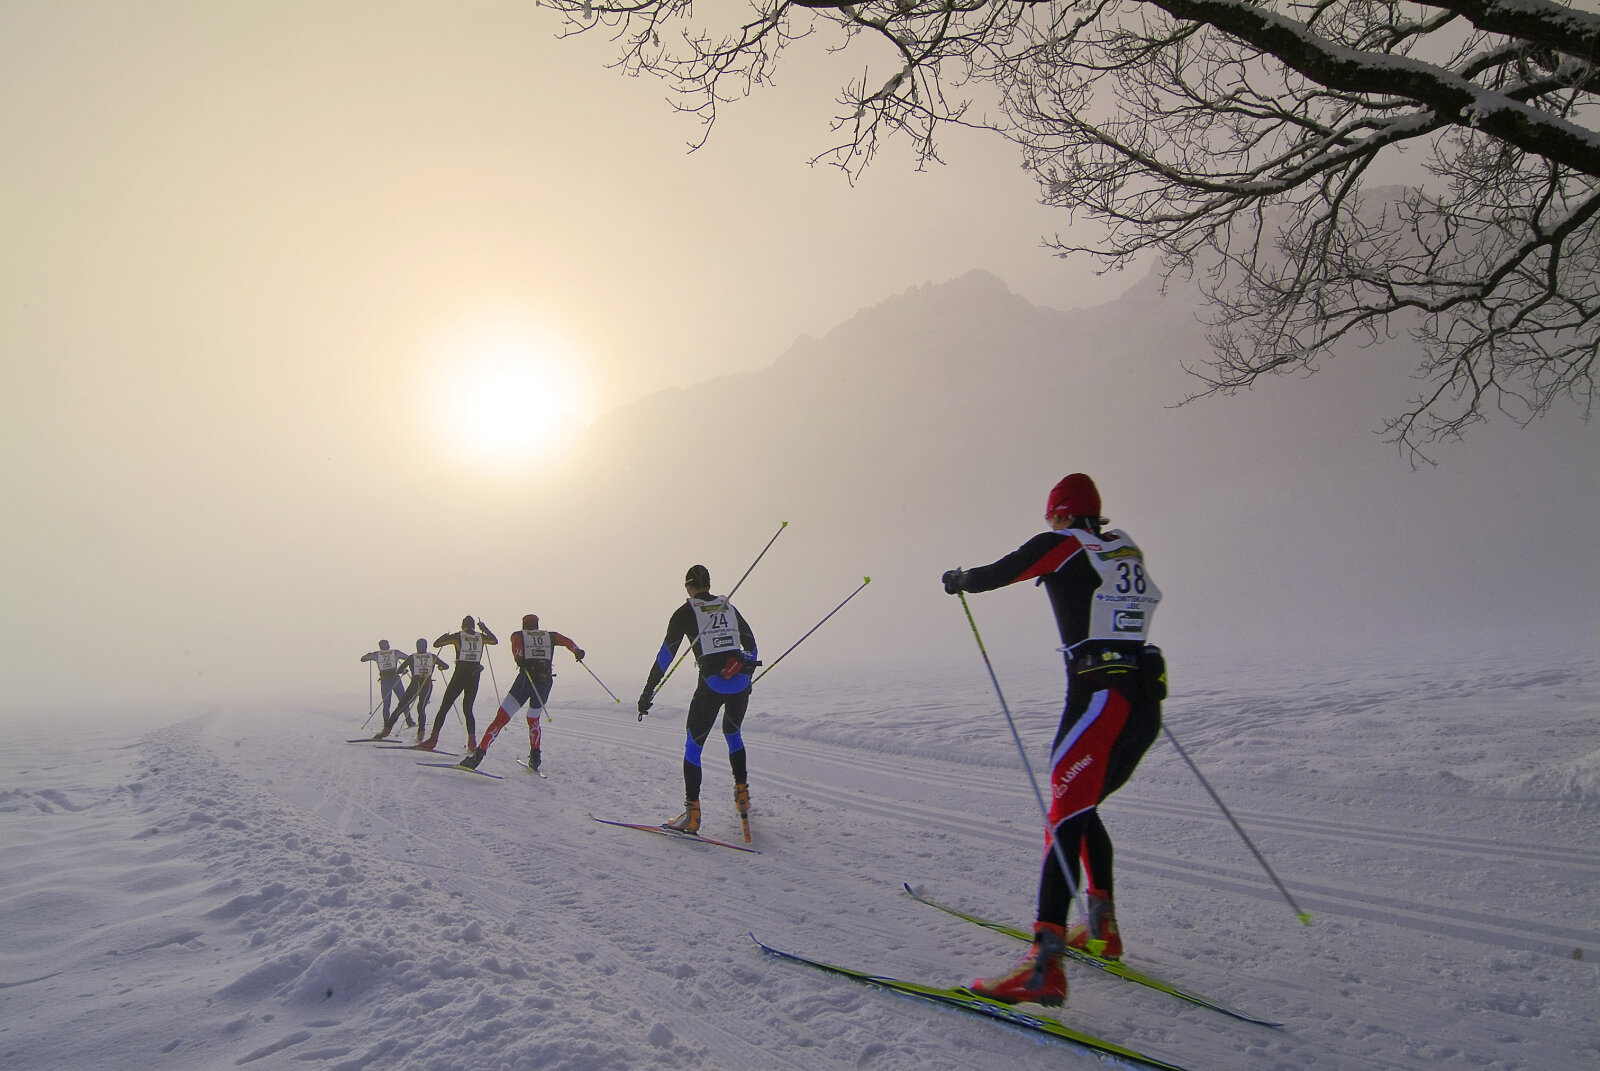 Dolomitenlauf nemzetközi sífutóverseny Lienzben | Fotó: Armin Zlobl, TVB Osttirol